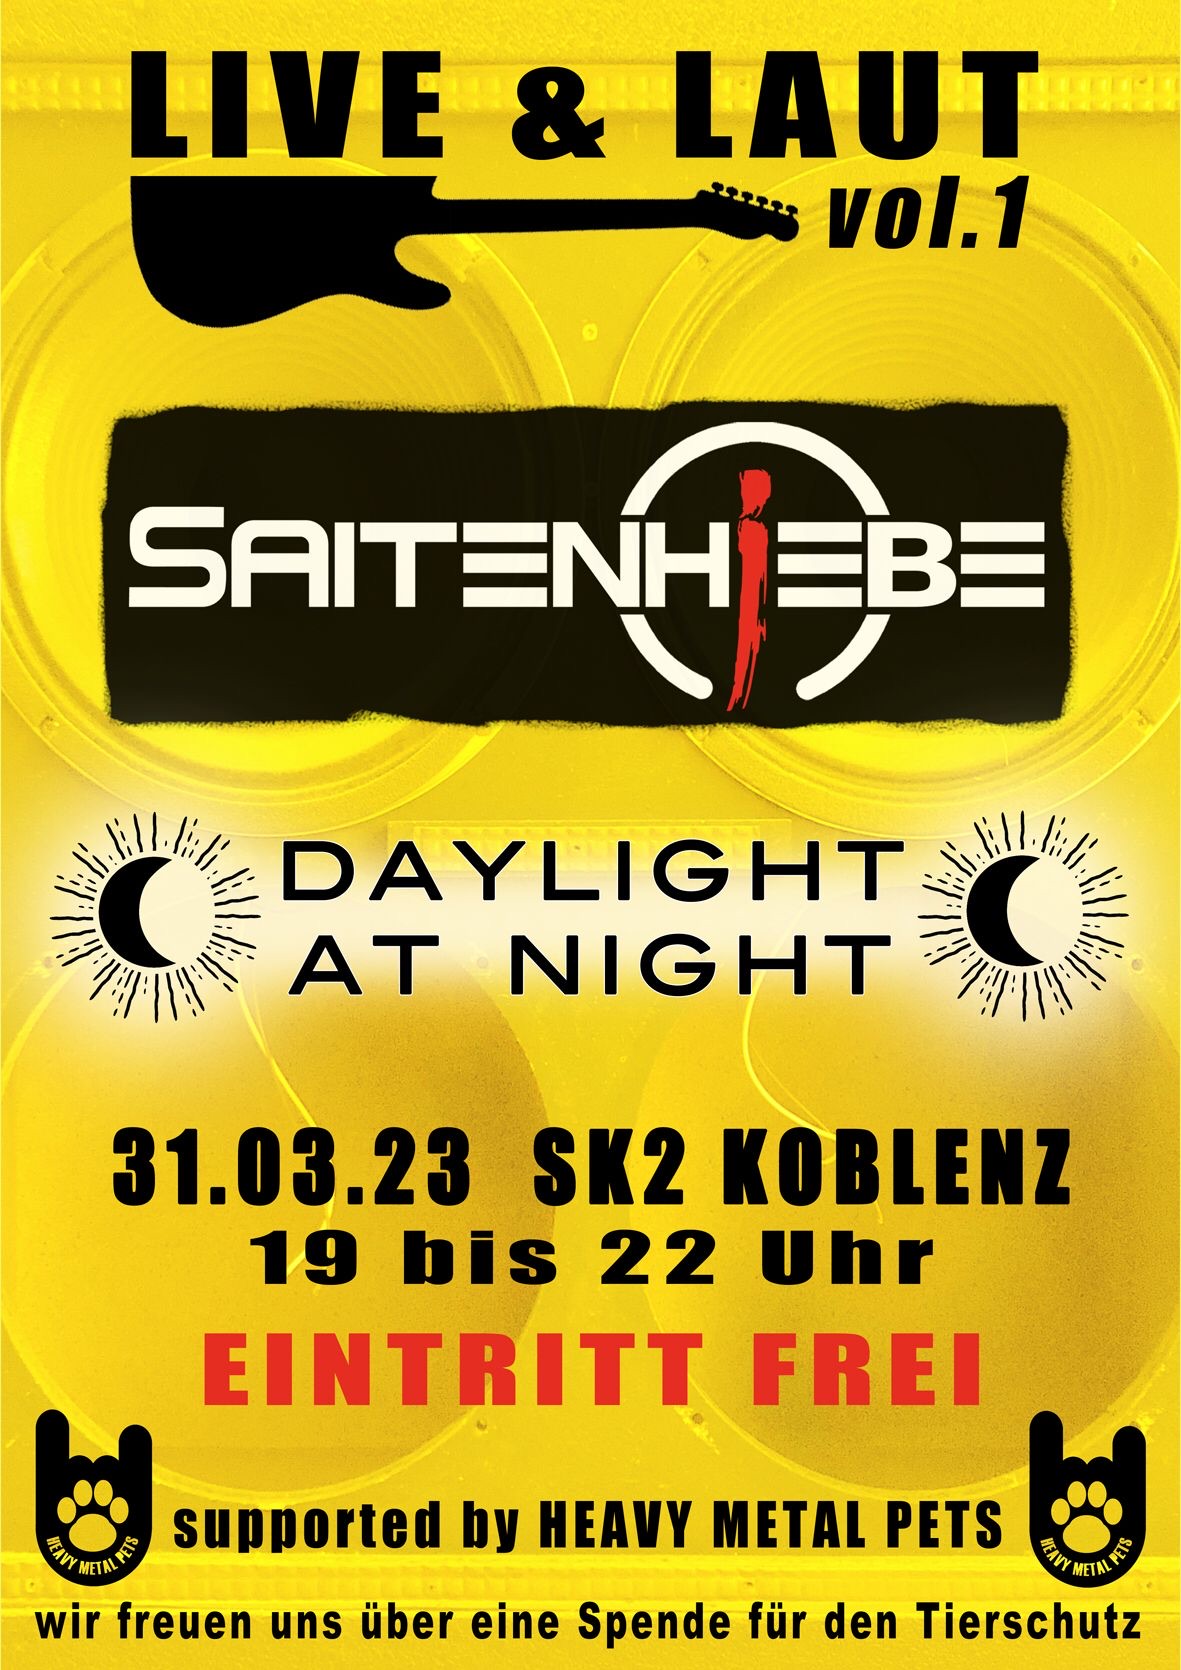 Koblenz Altstadt SK2 live Saitenhiebe Daylight at night Konzert Concert